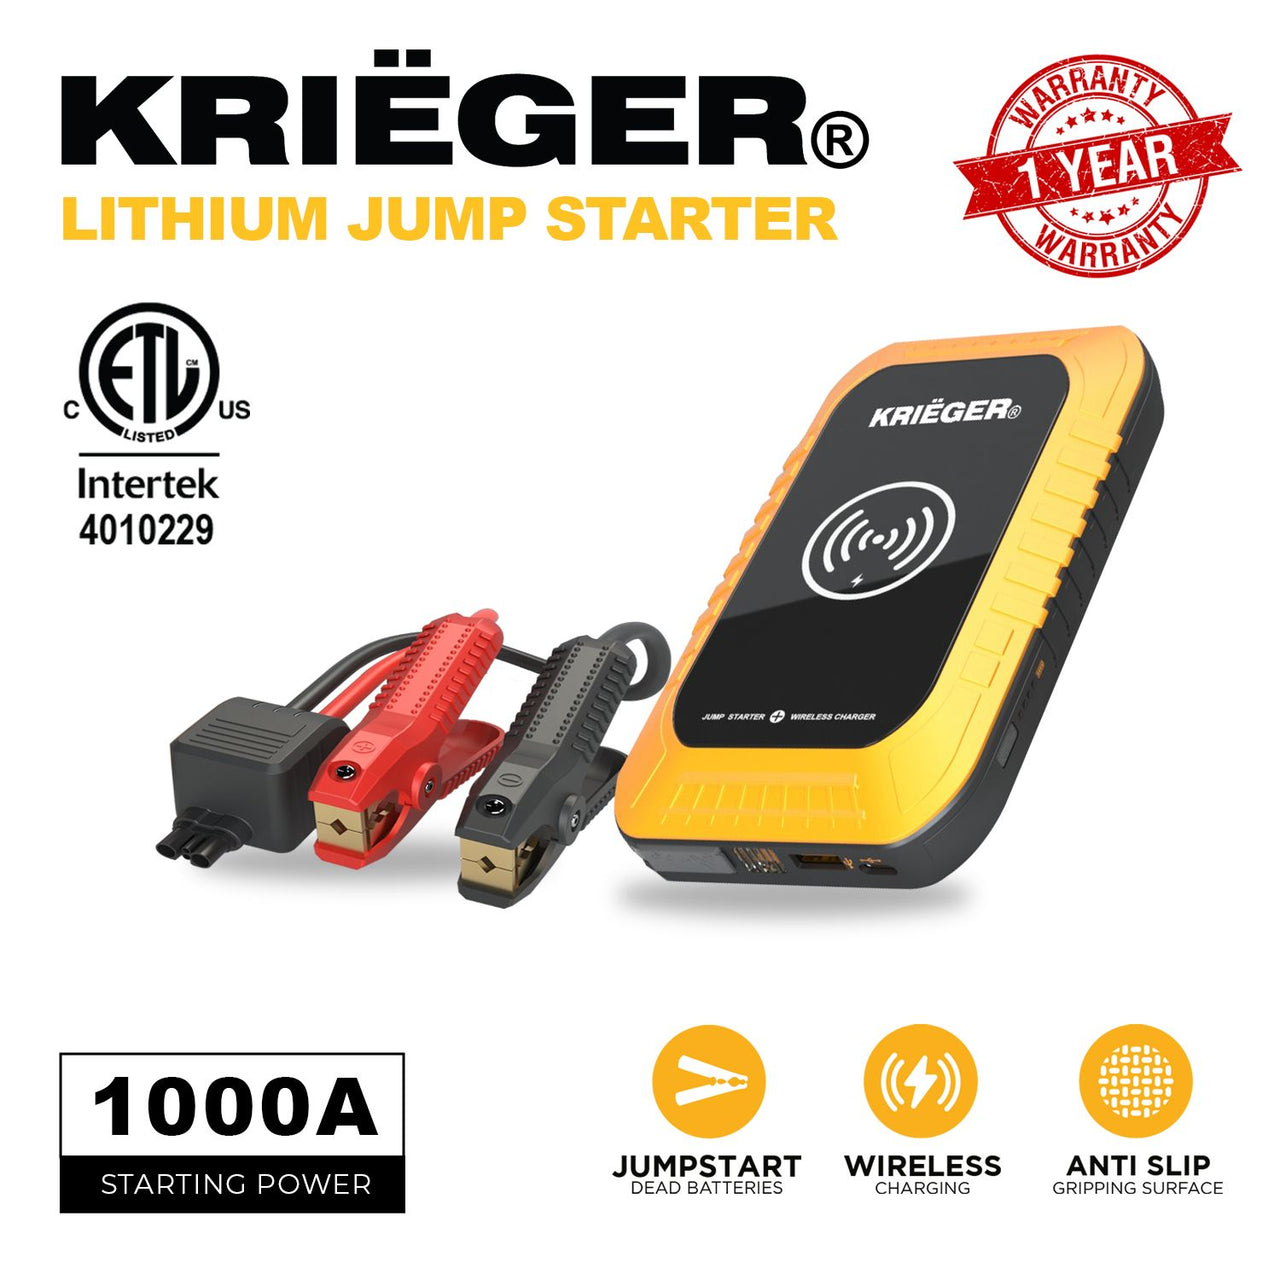 Krieger Lithium Jump Starter 1000A 7200mAh - KRJ1000